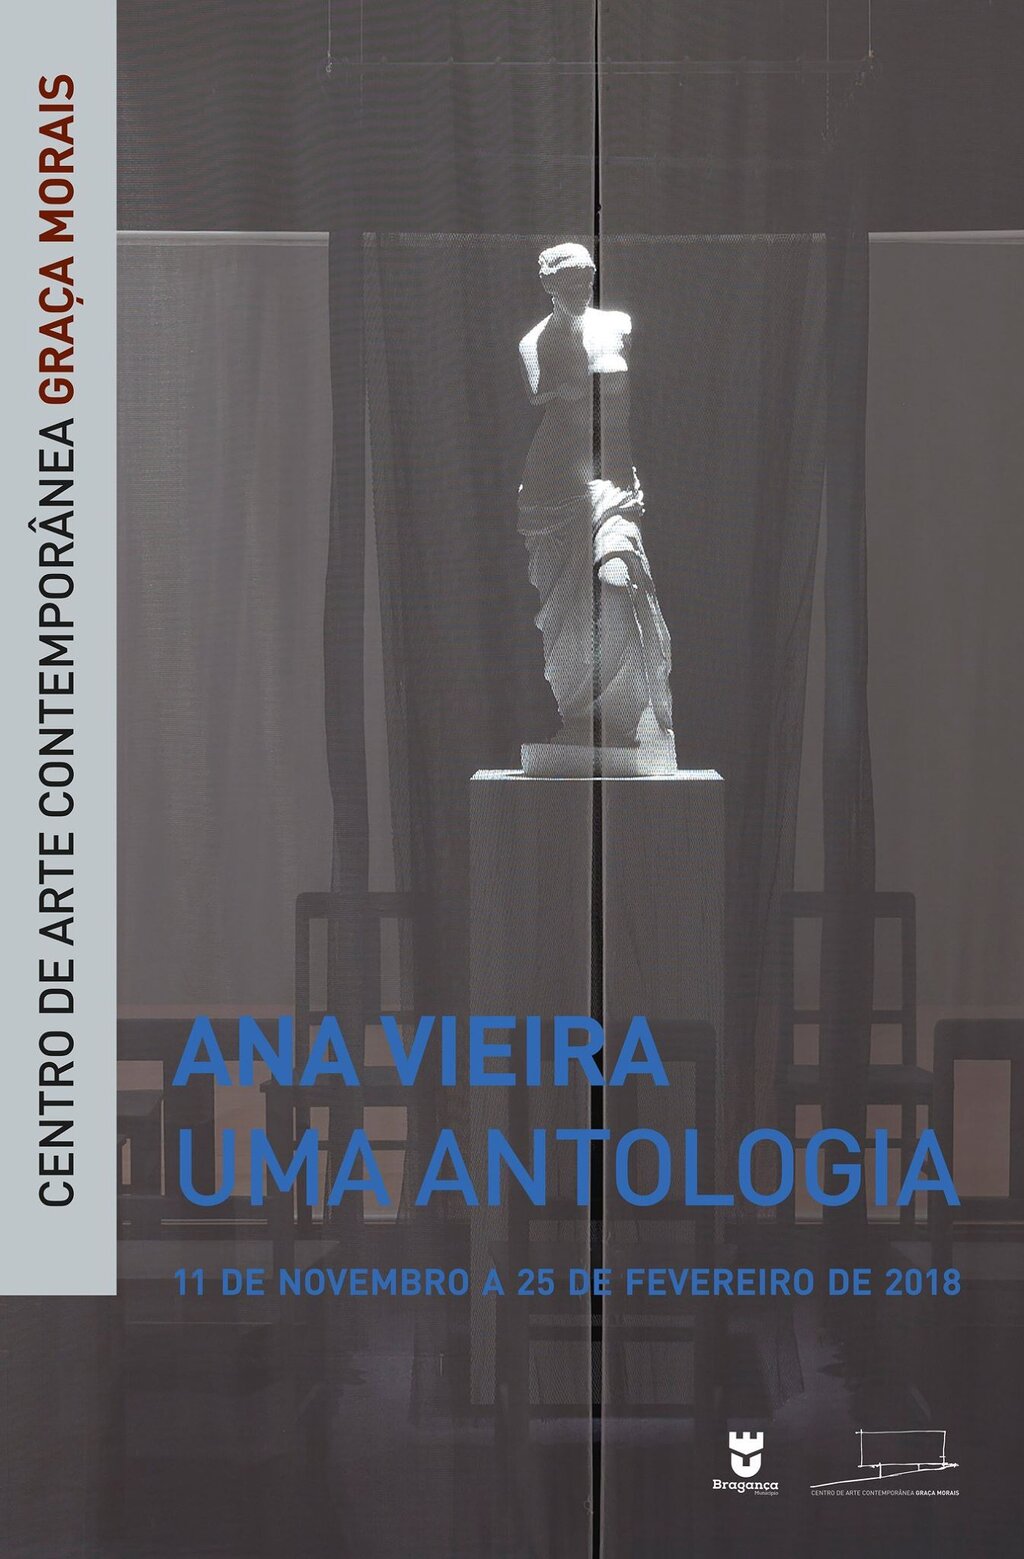 Ana Vieira Uma Antologia